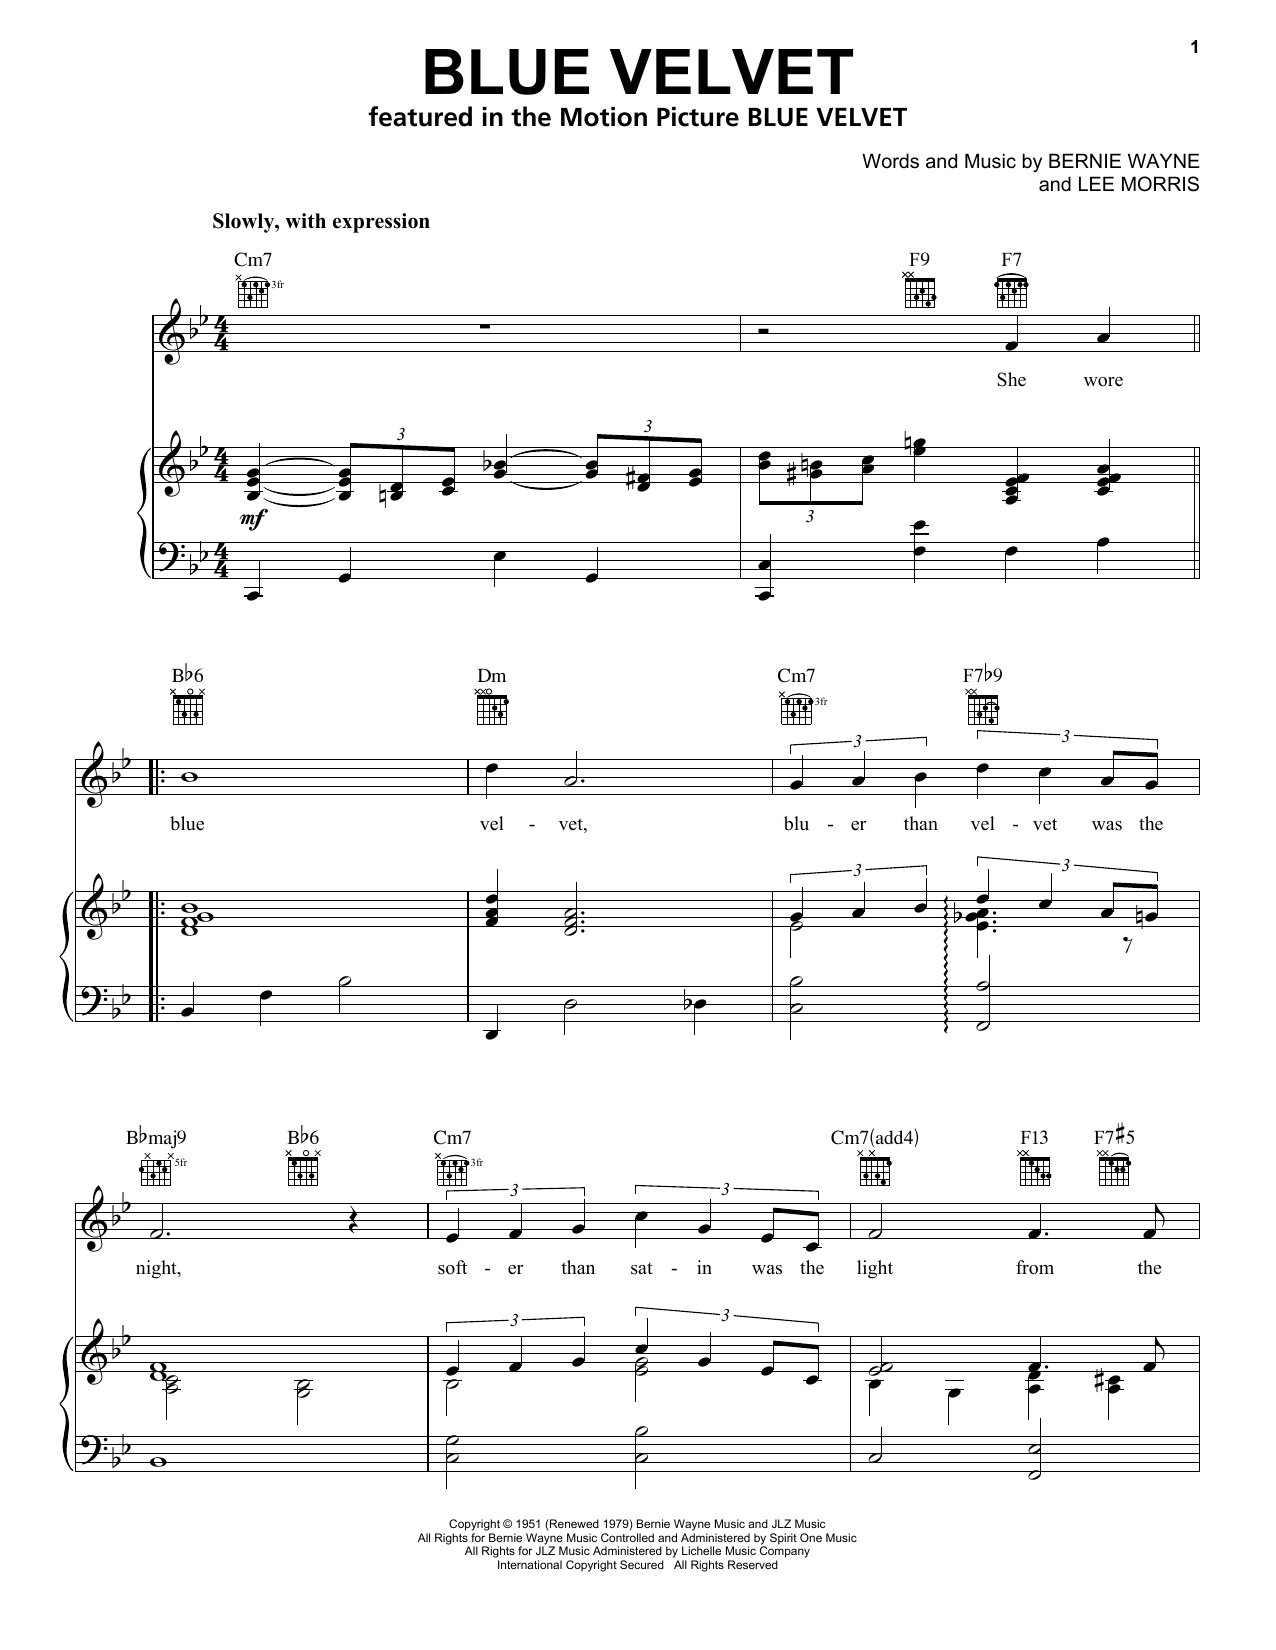 Bobby Vinton Blue Velvet Sheet Music Notes & Chords for Trombone - Download or Print PDF